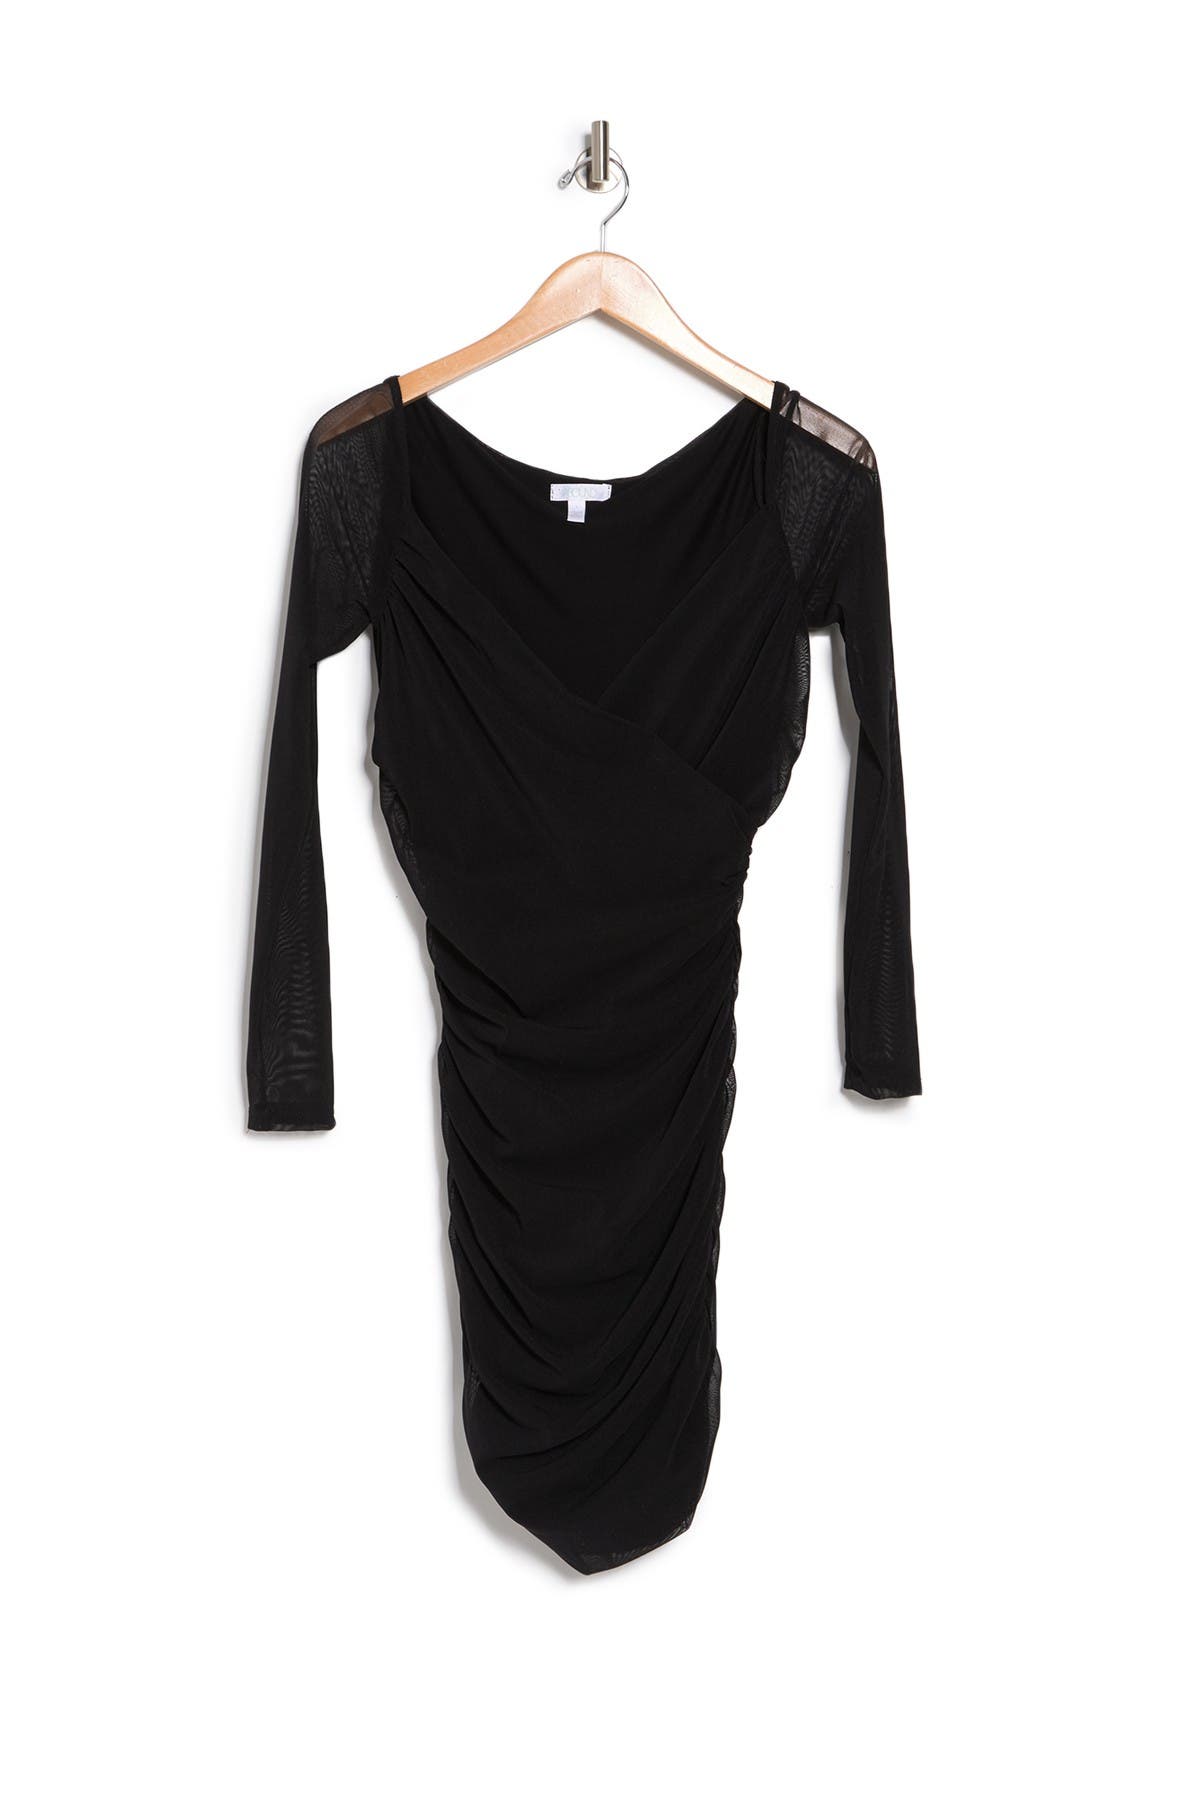 Buy > nordstrom rack black cocktail dress > in stock